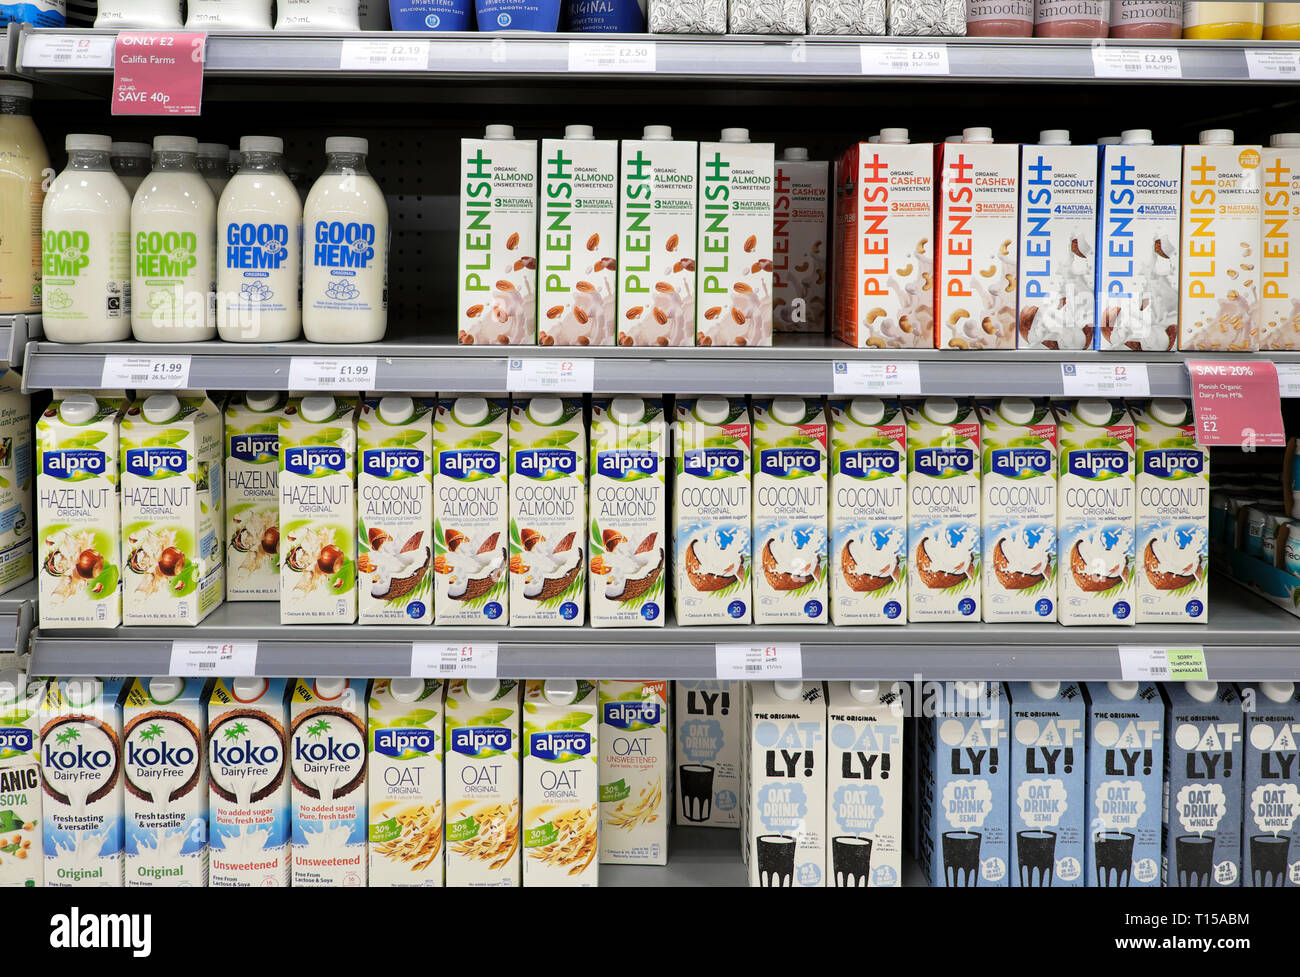 Lactose lait gratuit vegan santé boit le lait dans des cartons et des bouteilles sur une étagère de réfrigération au supermarché Waitrose à Londres Angleterre KATHY DEWITT Banque D'Images